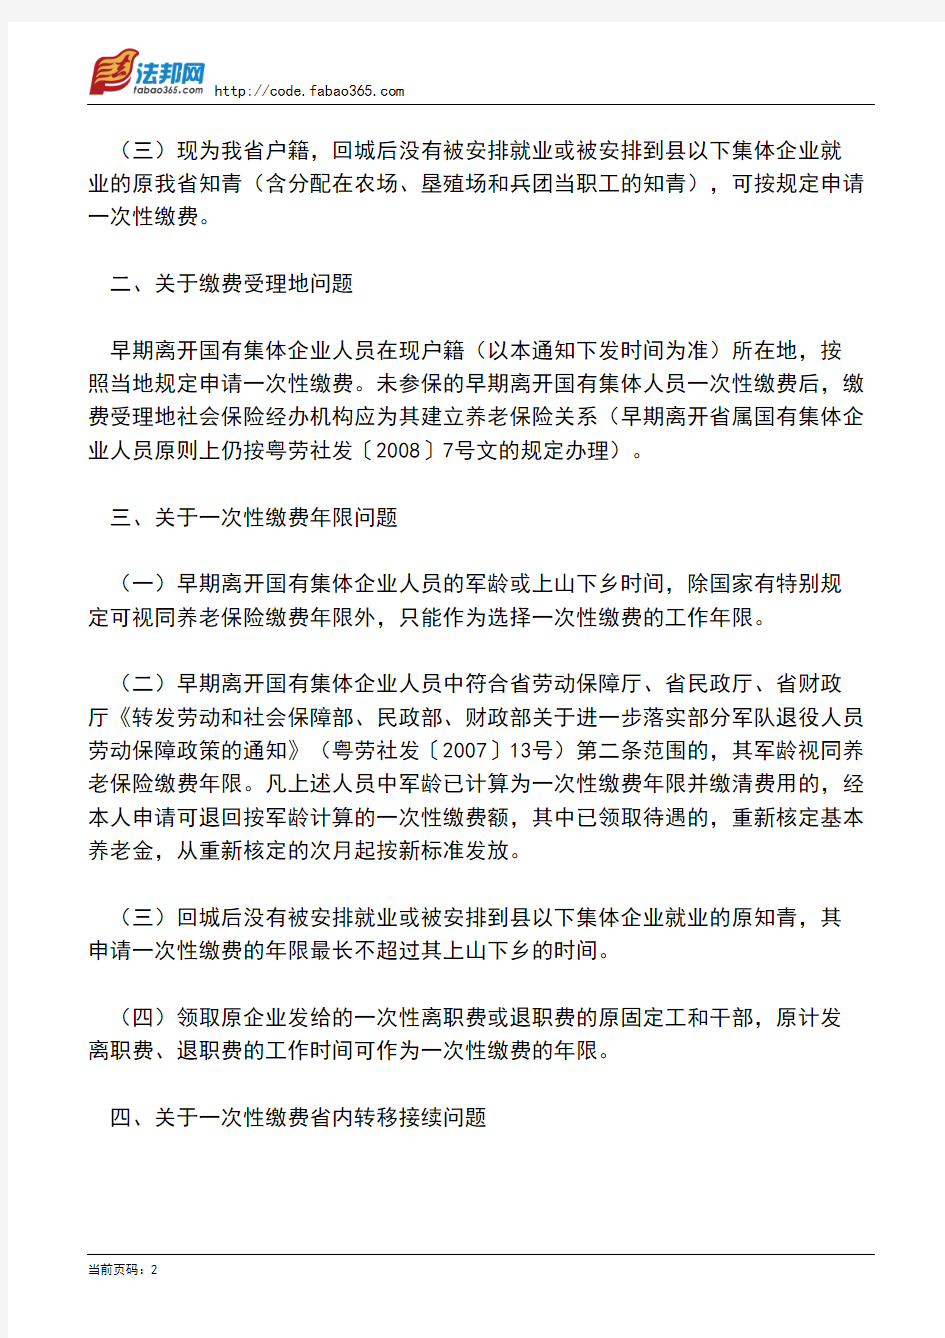 广东省劳动和社会保障厅关于早期离开国有集体企业人员申请一次性养老保险缴费有关问题的通知